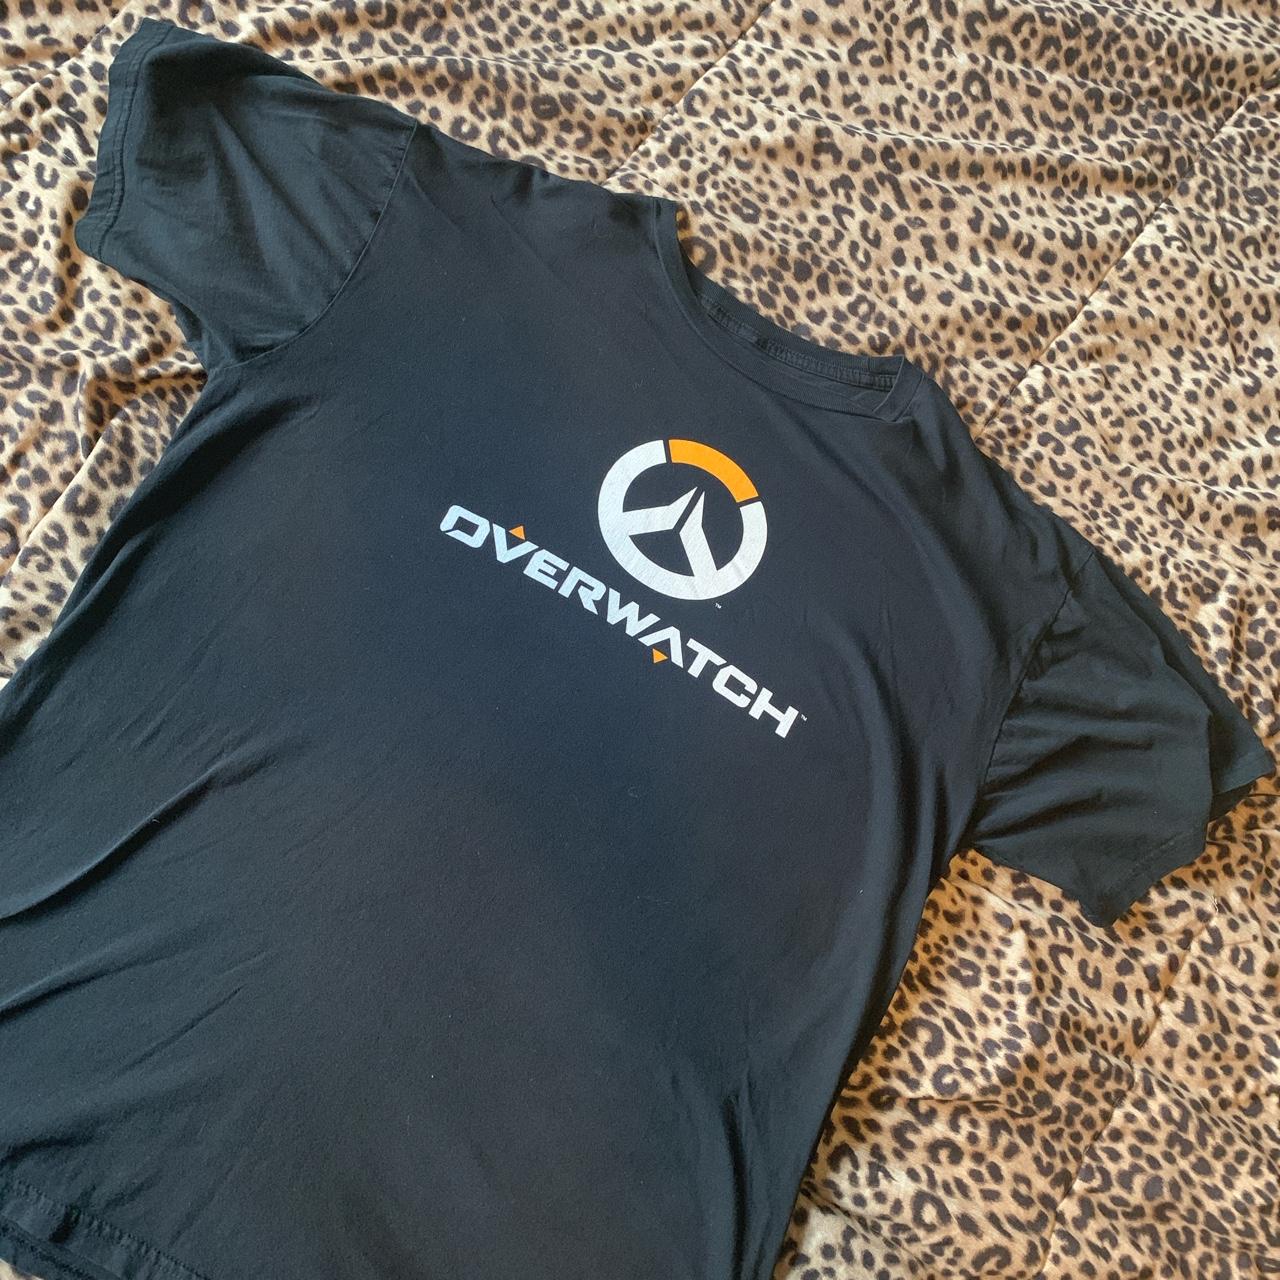 Overwatch Men's T-shirt